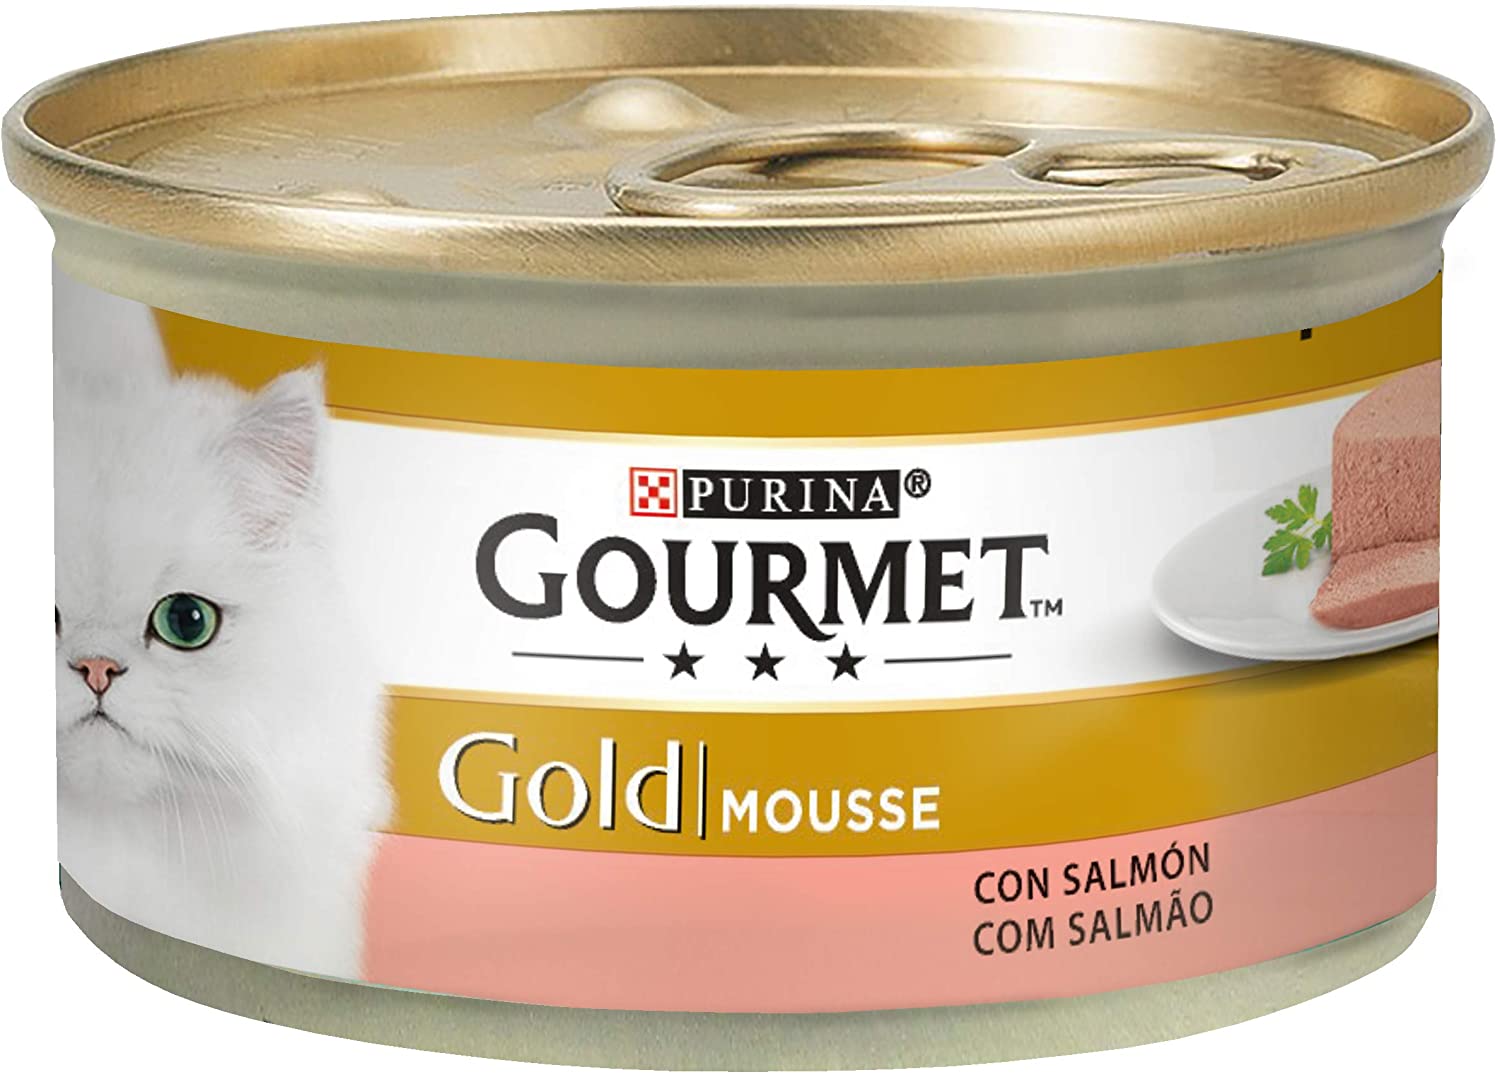  Purina Gourmet Gold Mousse Comida para Gatos con Pollo, 24 x 85 gr 